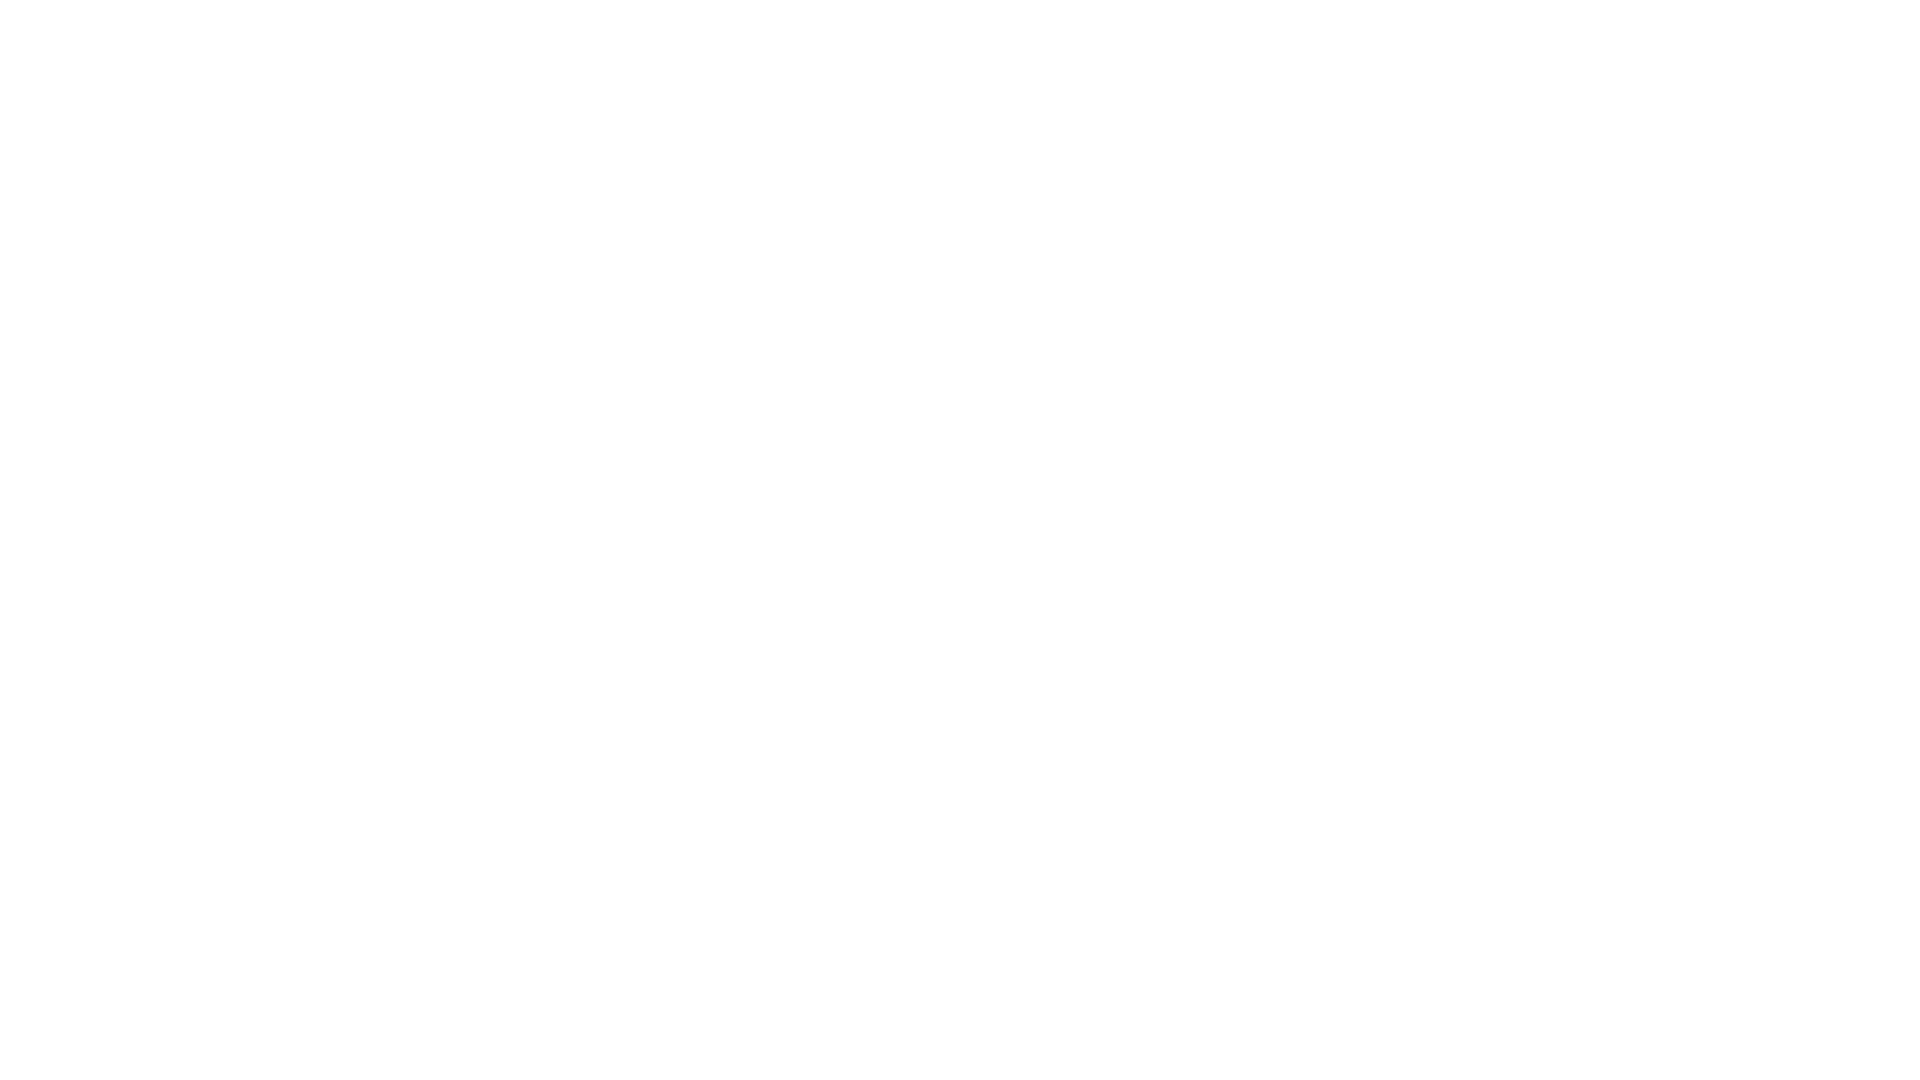 Johnsonite.png